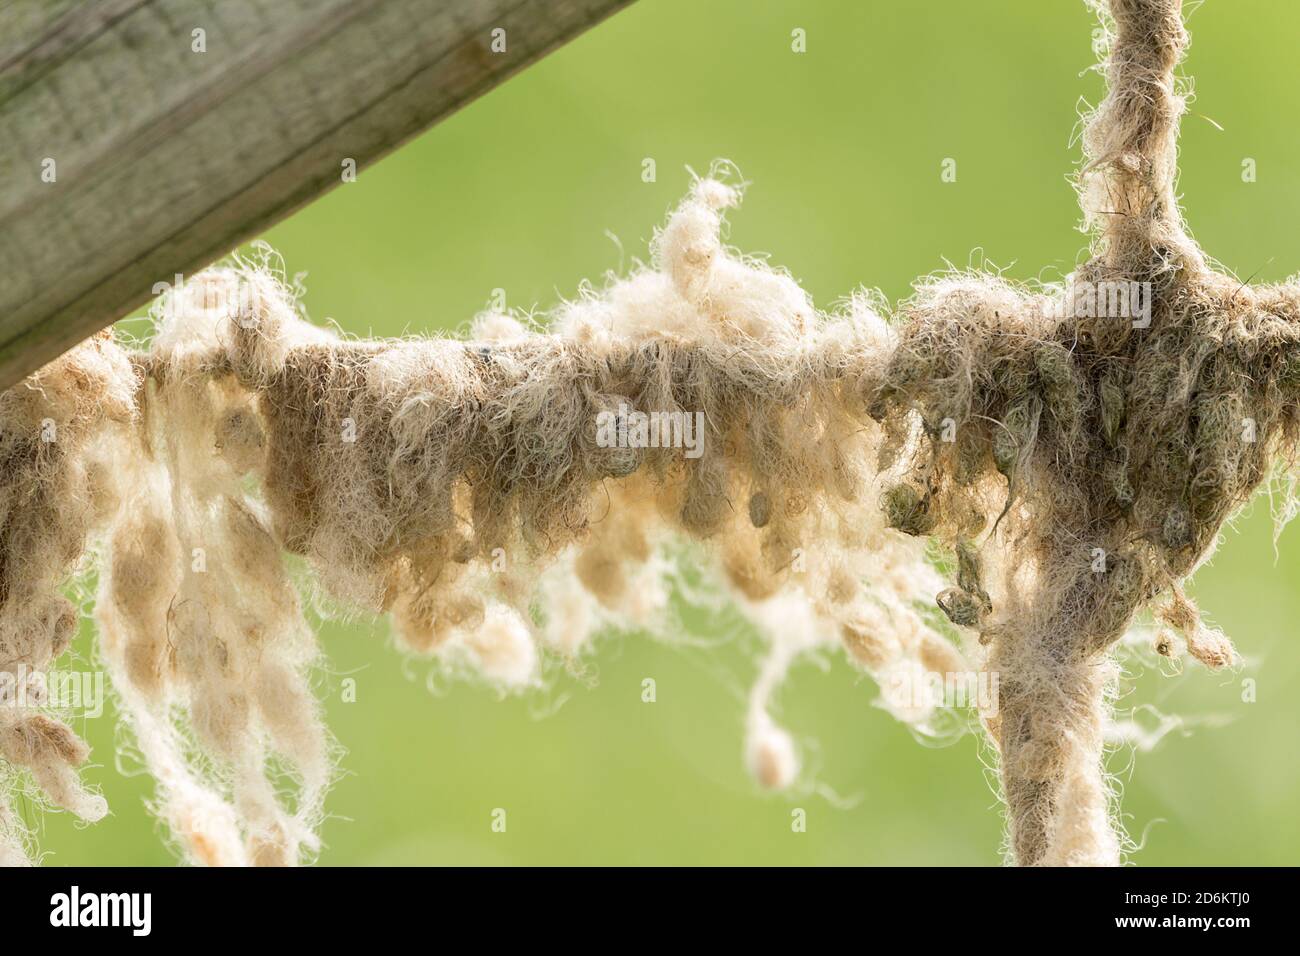 Schafwolle auf Draht Zäune verwickelt und verfilzt bilden Klumpen. Wind geblasen lose Wolle oder durch Schafe reiben gegen Zäune baut Ablagerungen. Stockfoto